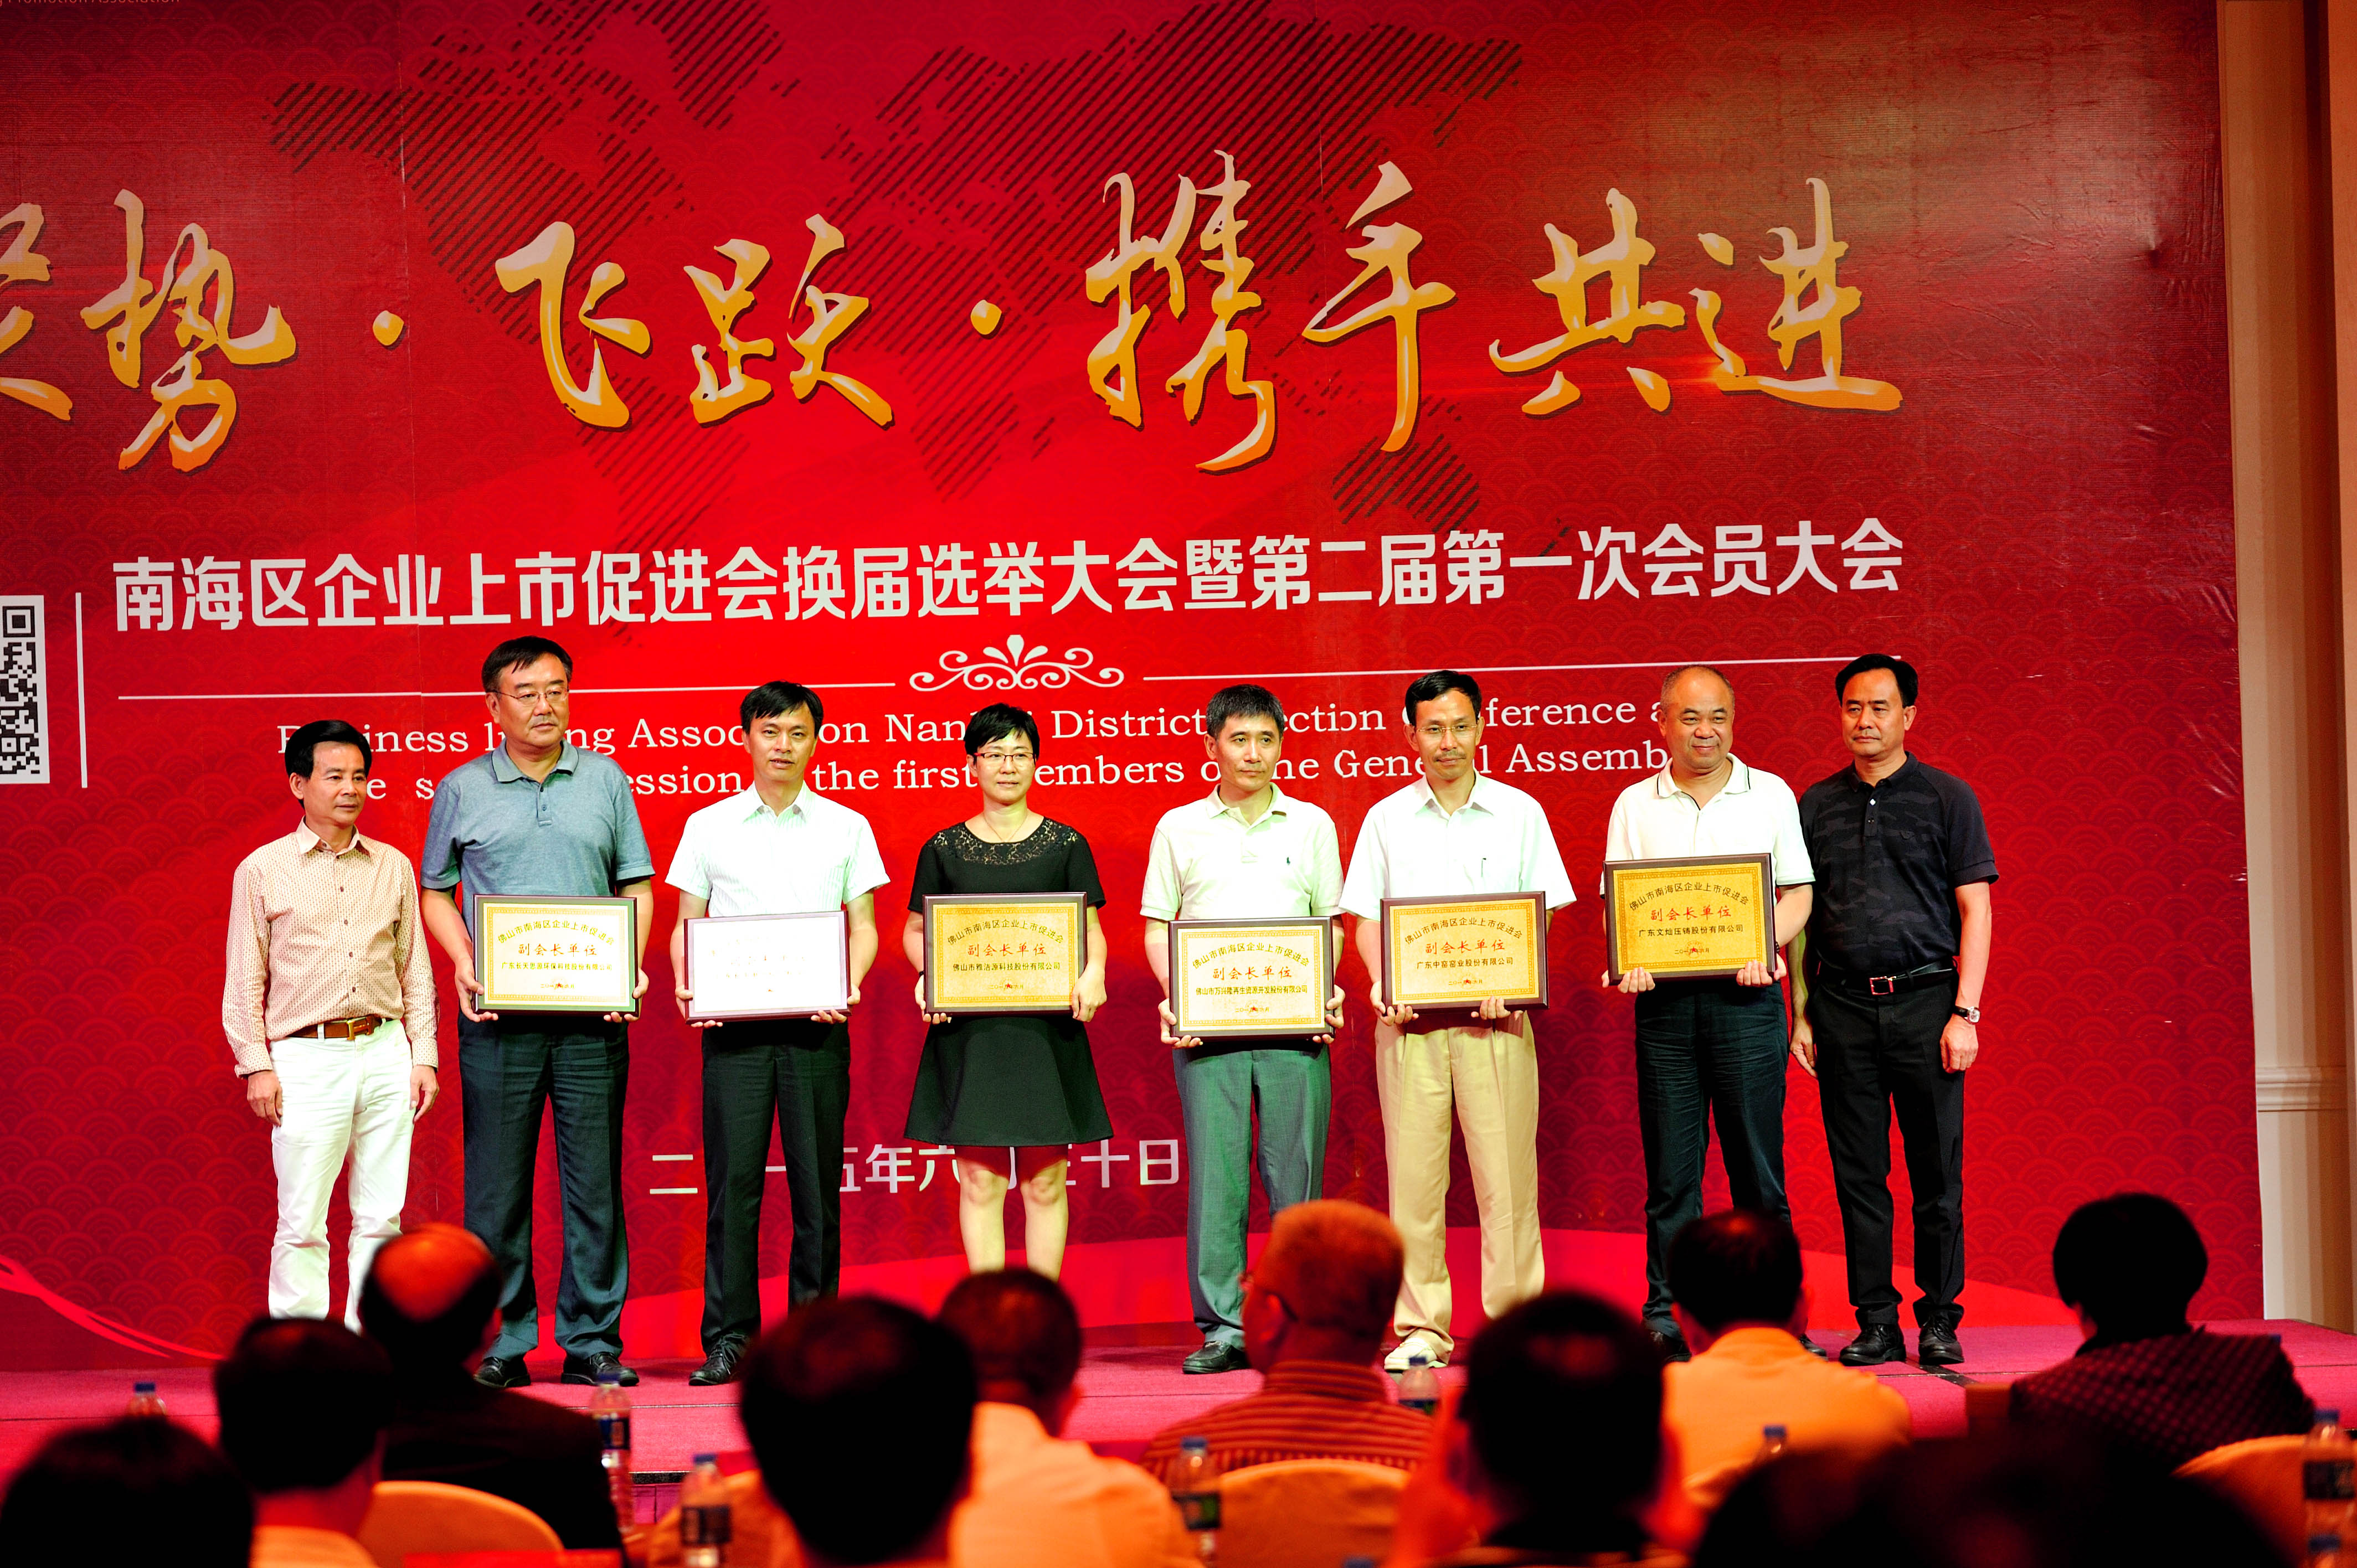 6、副会长李兴浩（左一）、唐灼林（右一）为新增副会长单位颁发牌匾.jpg